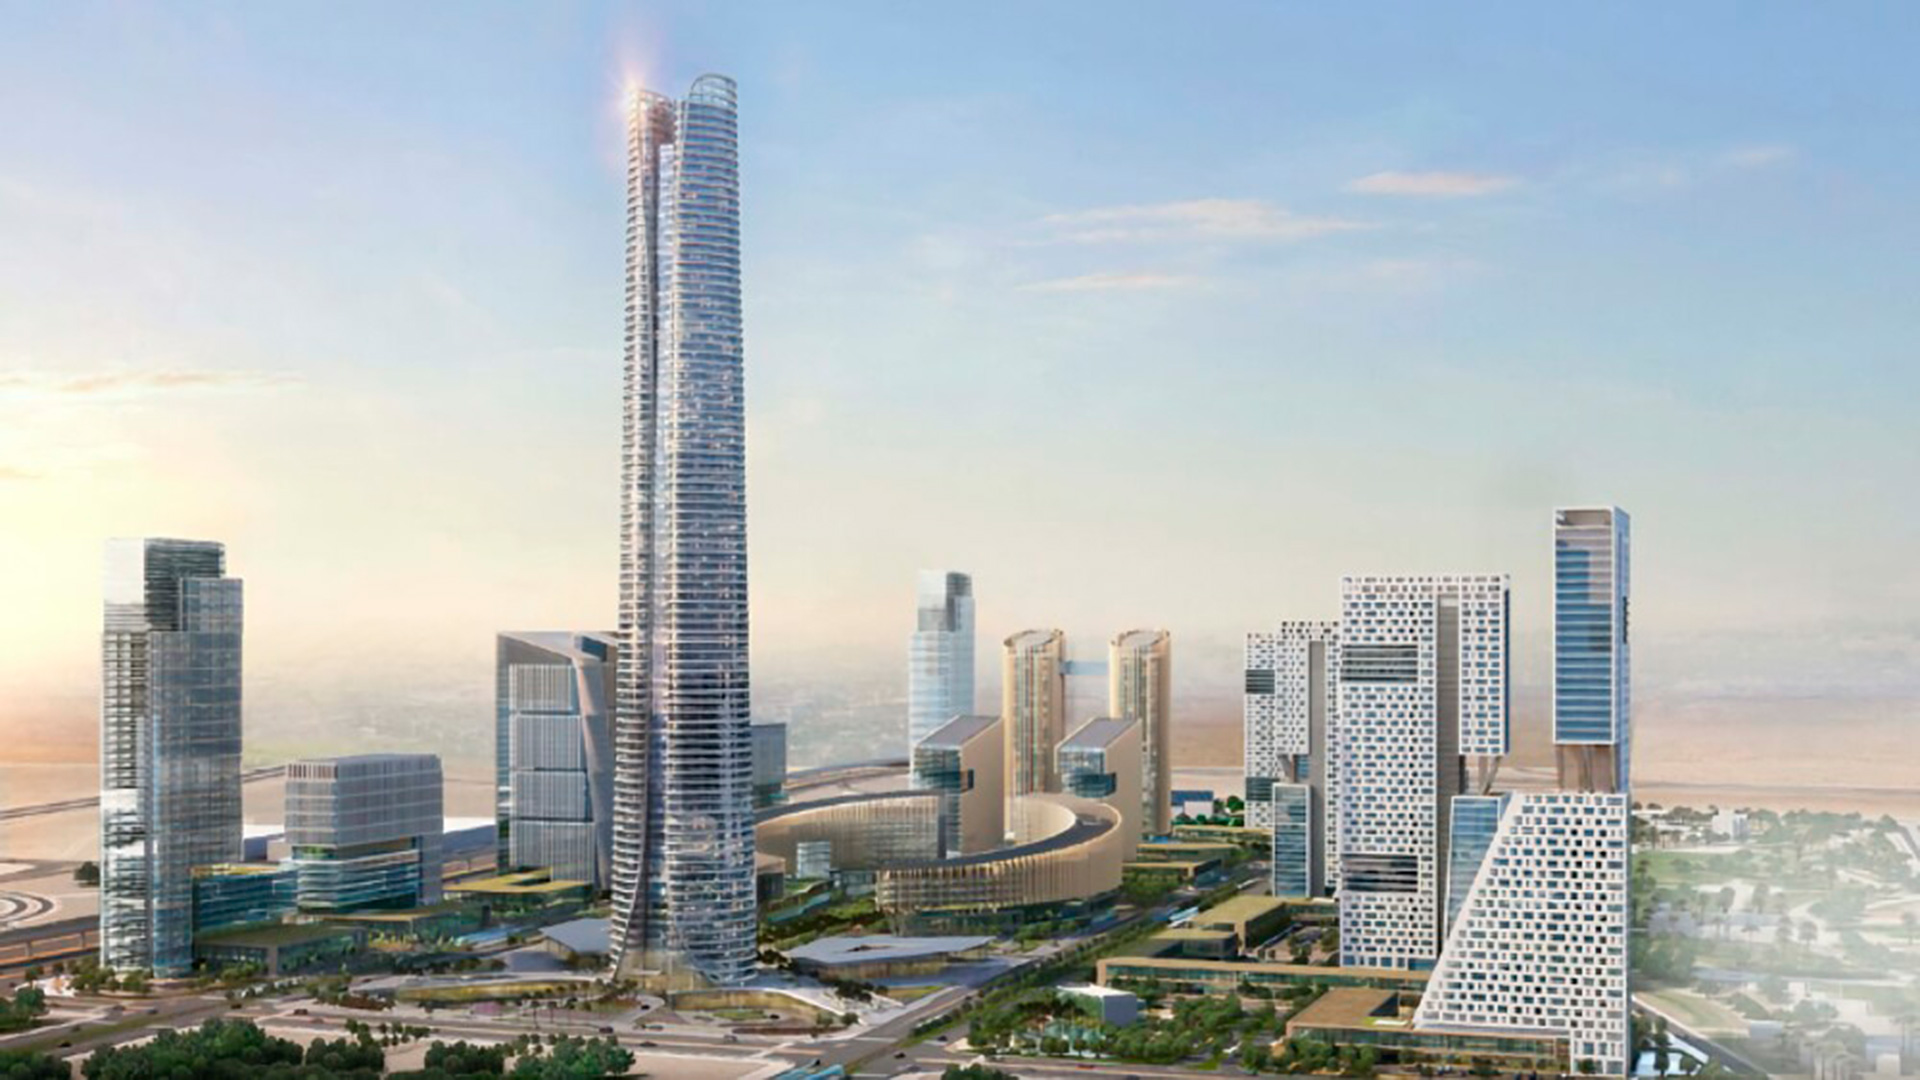 El complejo superará los 7 millones de metros cuadrados y habrá varios edificios que combinarán lo corporativo, organismos públicos y lo residencial